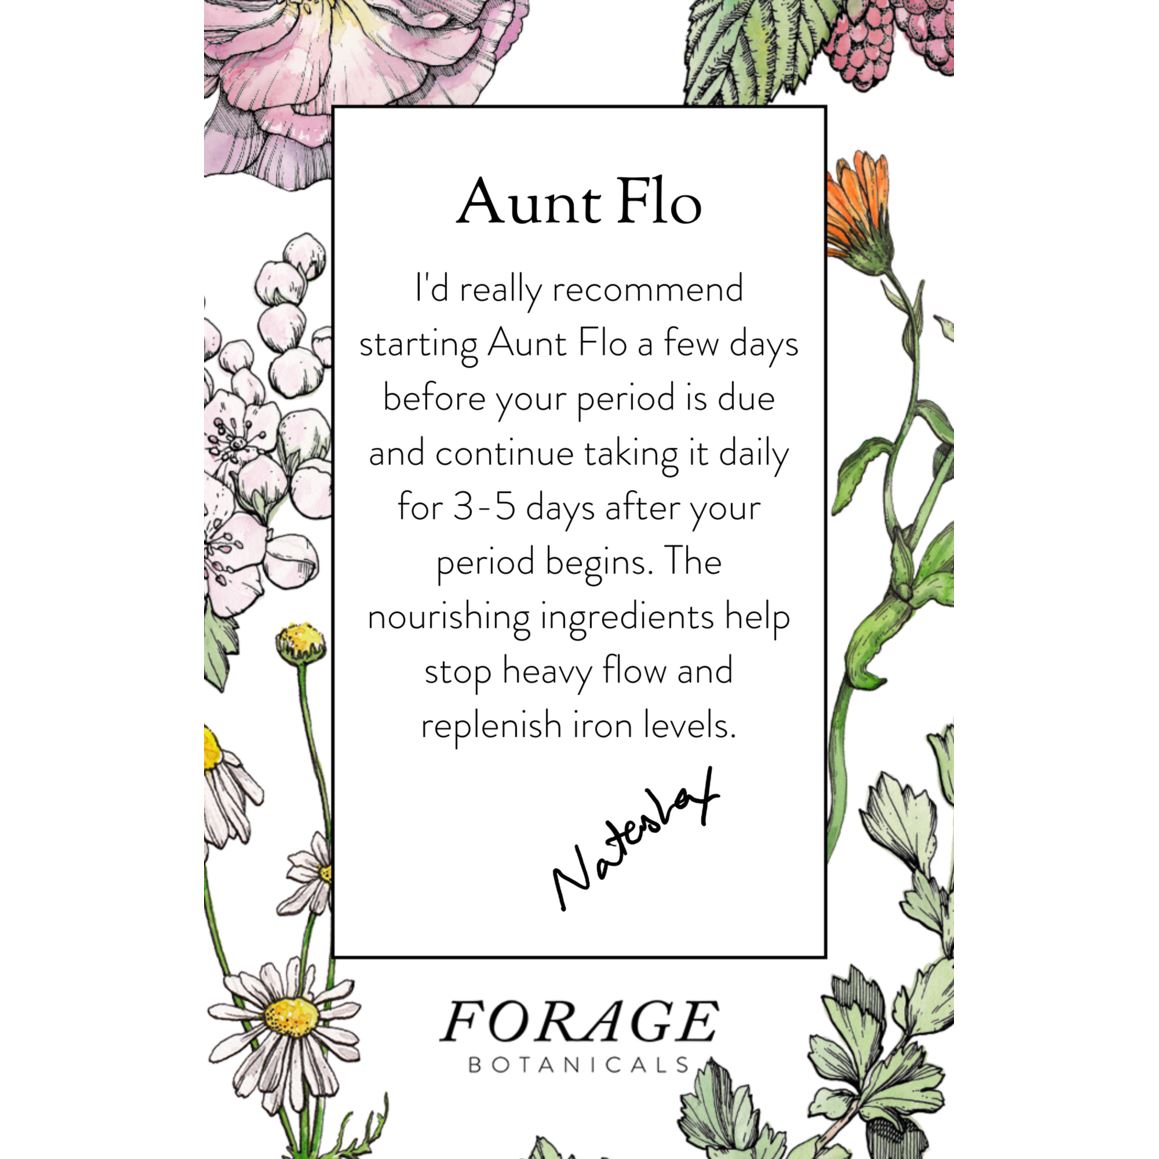 Aunt Flo&#39;s Drinking Chocolate Nahrungsergänzungsmittel Forage Botanicals - Genuine Selection